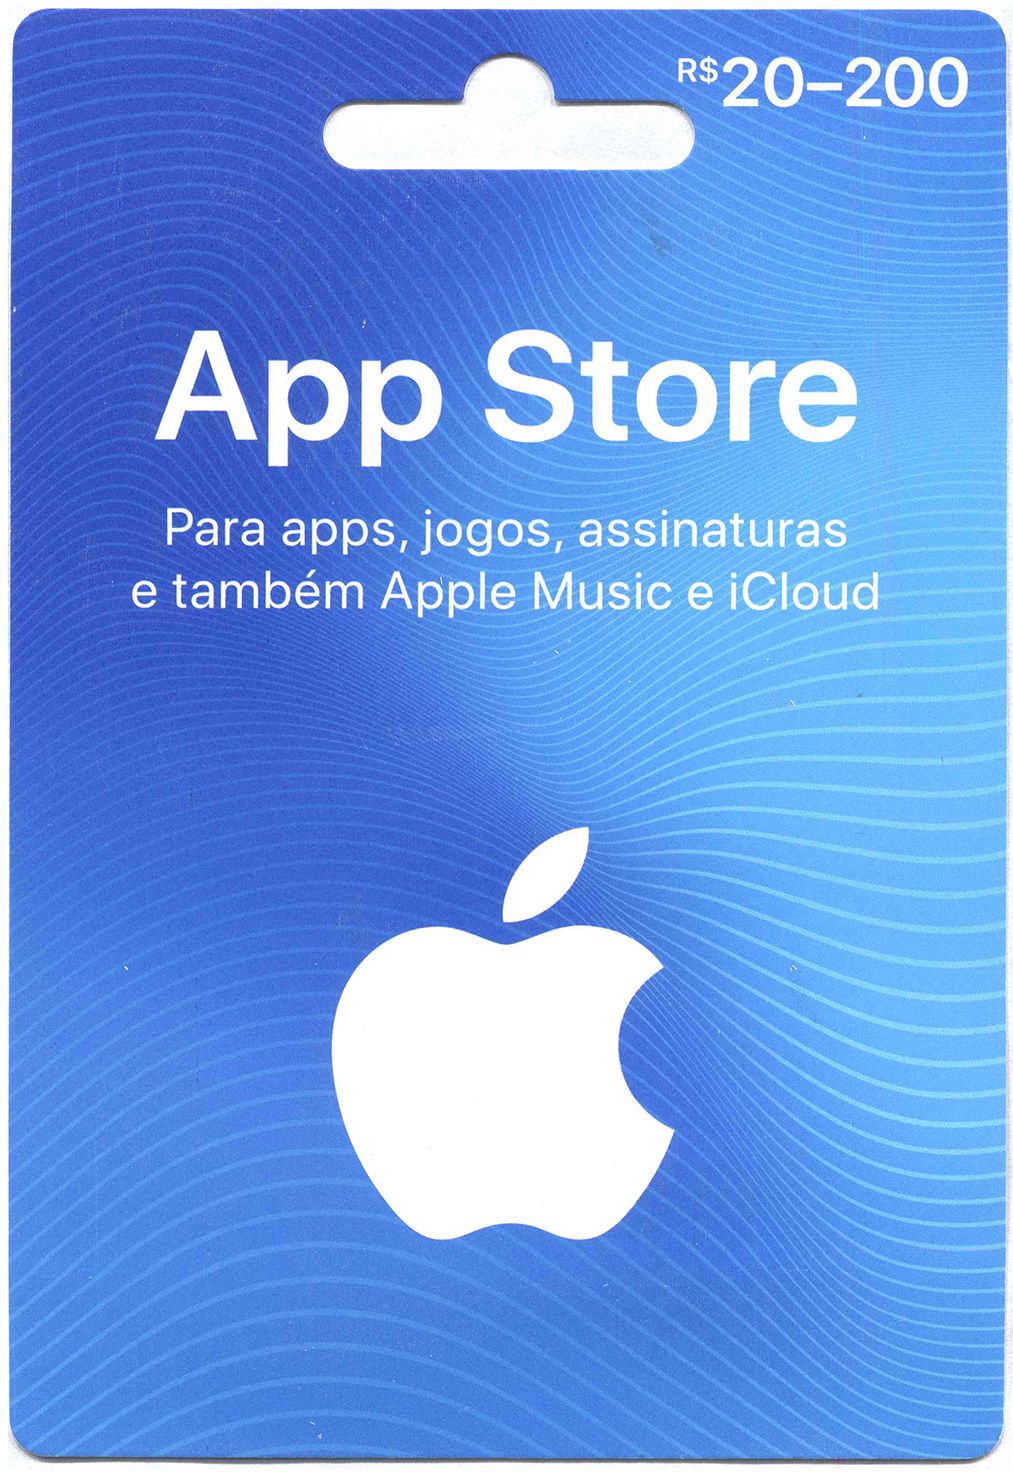 Comprar iTunes Gift Card - Cartão App Store R$200 Reais ...